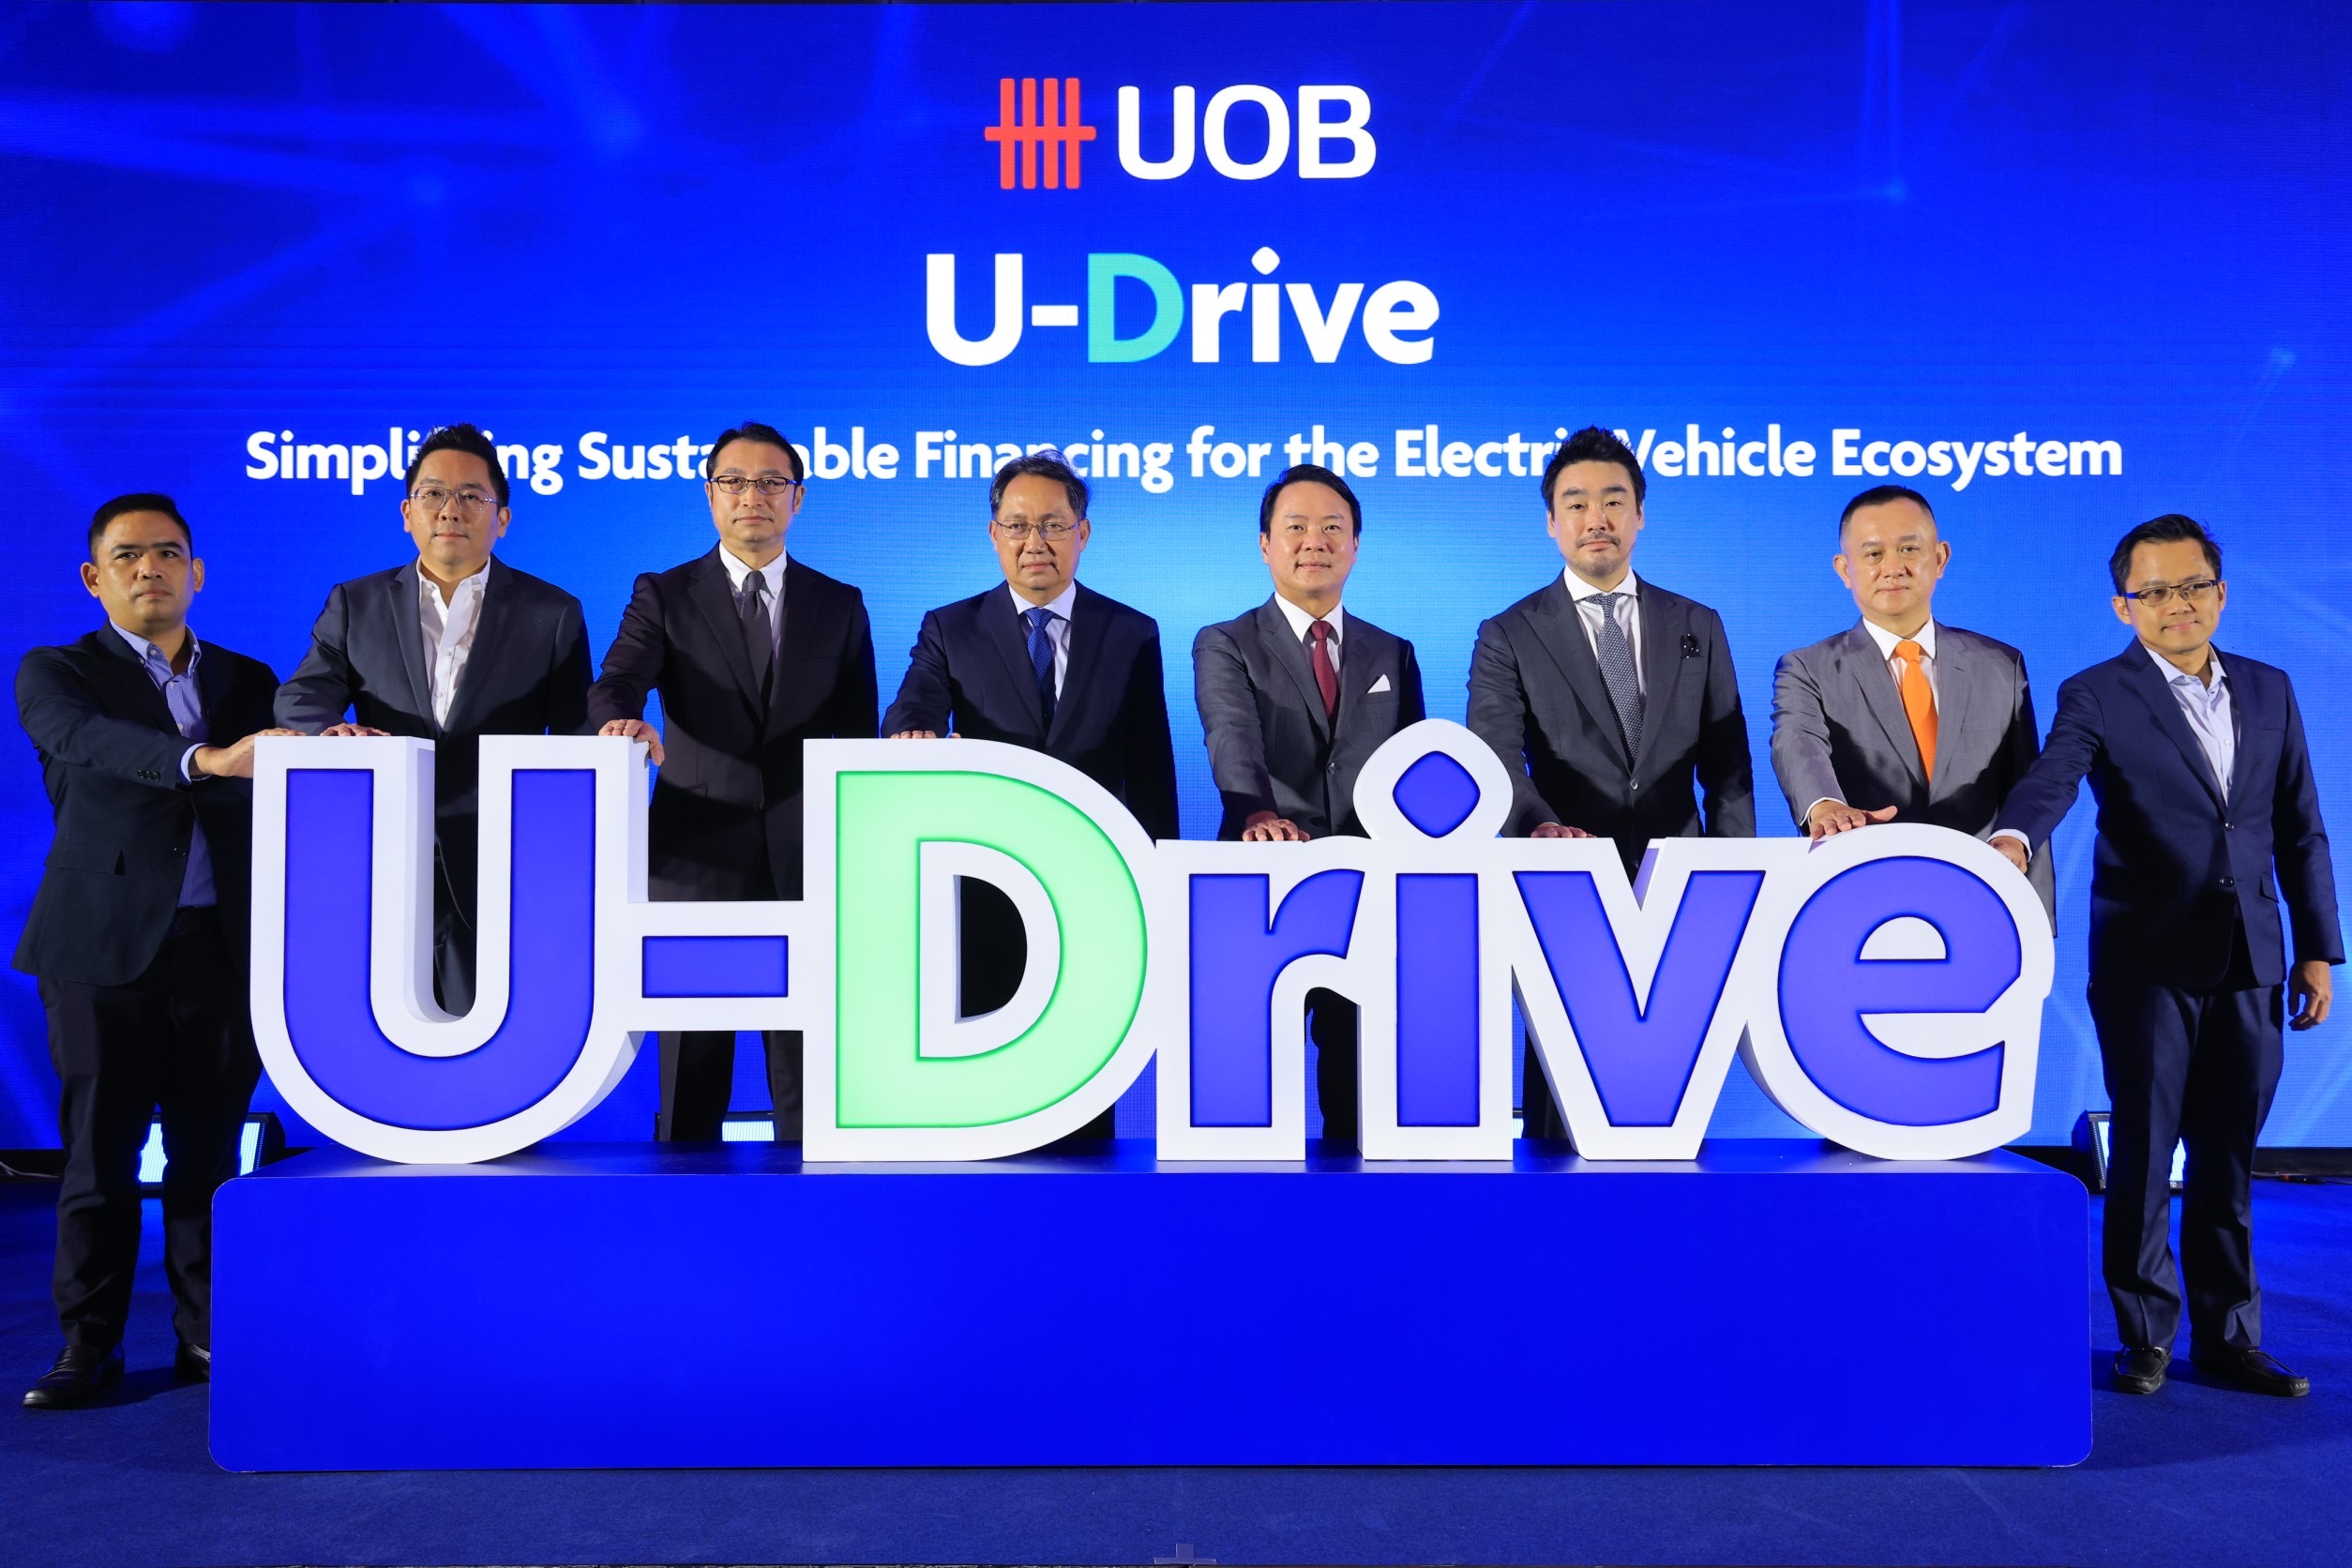 ยูโอบี เปิดตัวโครงการ “U-Drive” โซลูชันด้านการเงินแบบ ครบวงจรสำหรับระบบนิเวศยานยนต์ไฟฟ้าในประเทศไทย